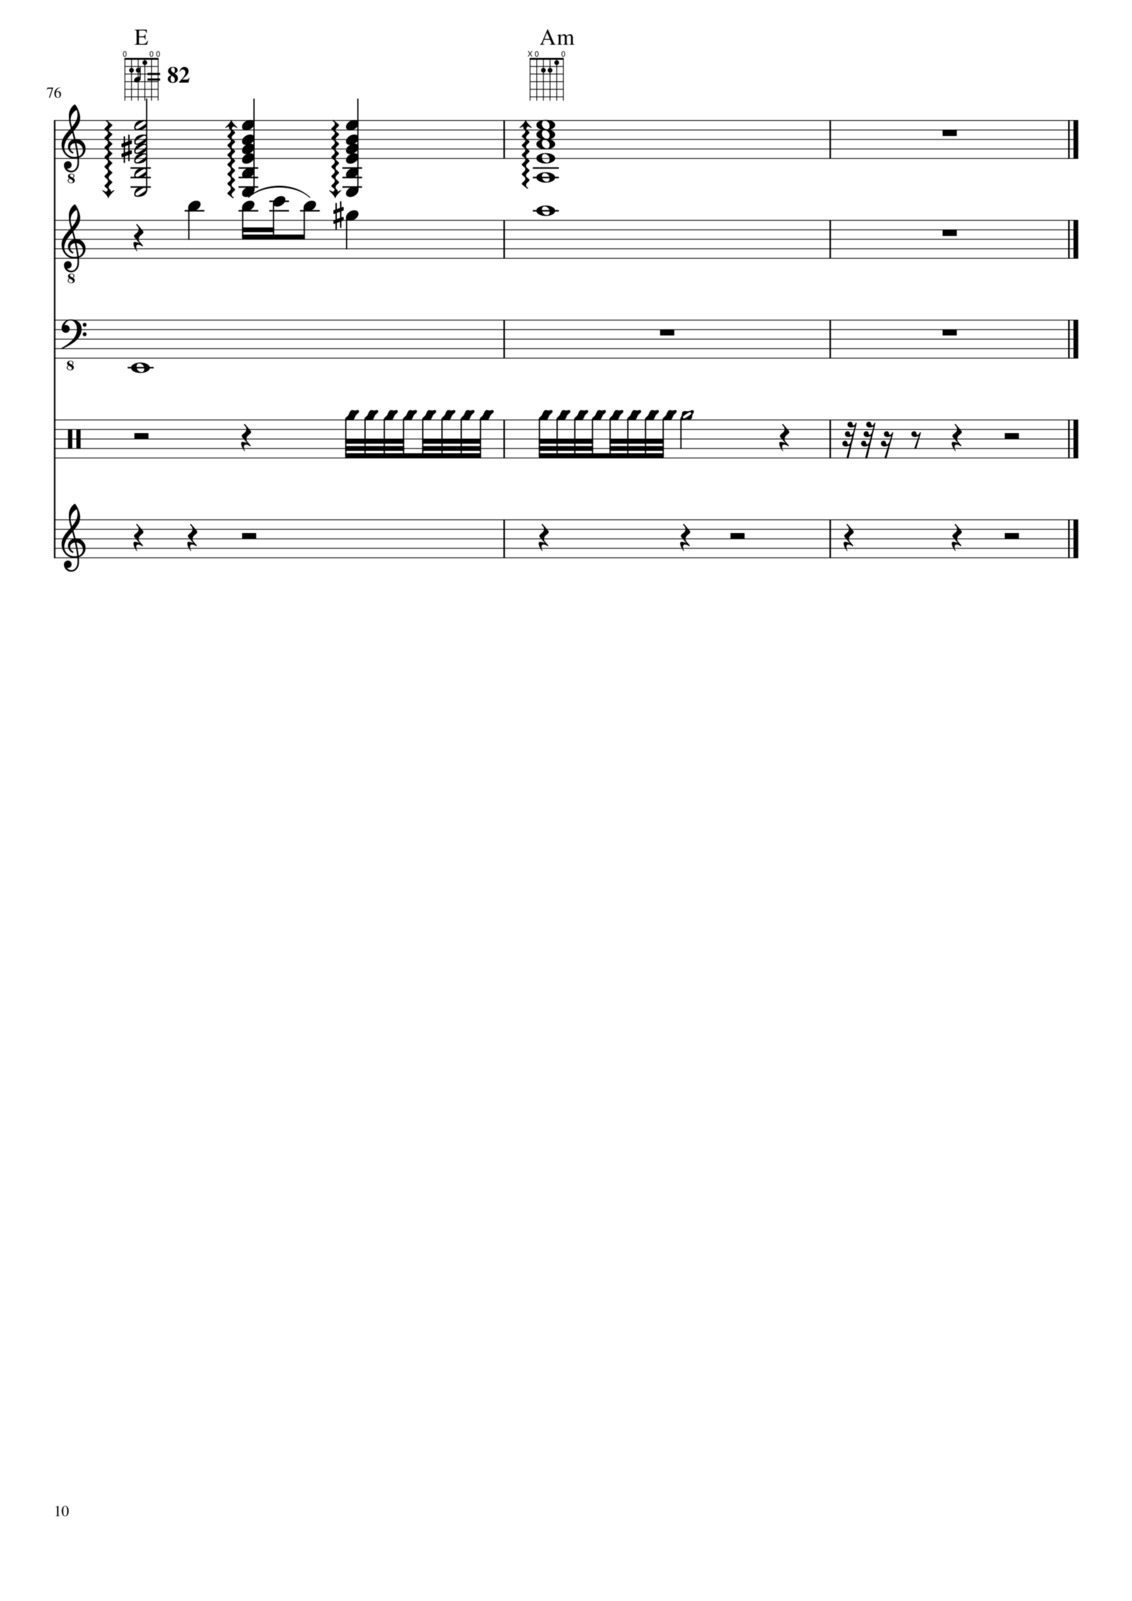 Prervannaya lyubov ili arbuznaya korka slide, Image 10